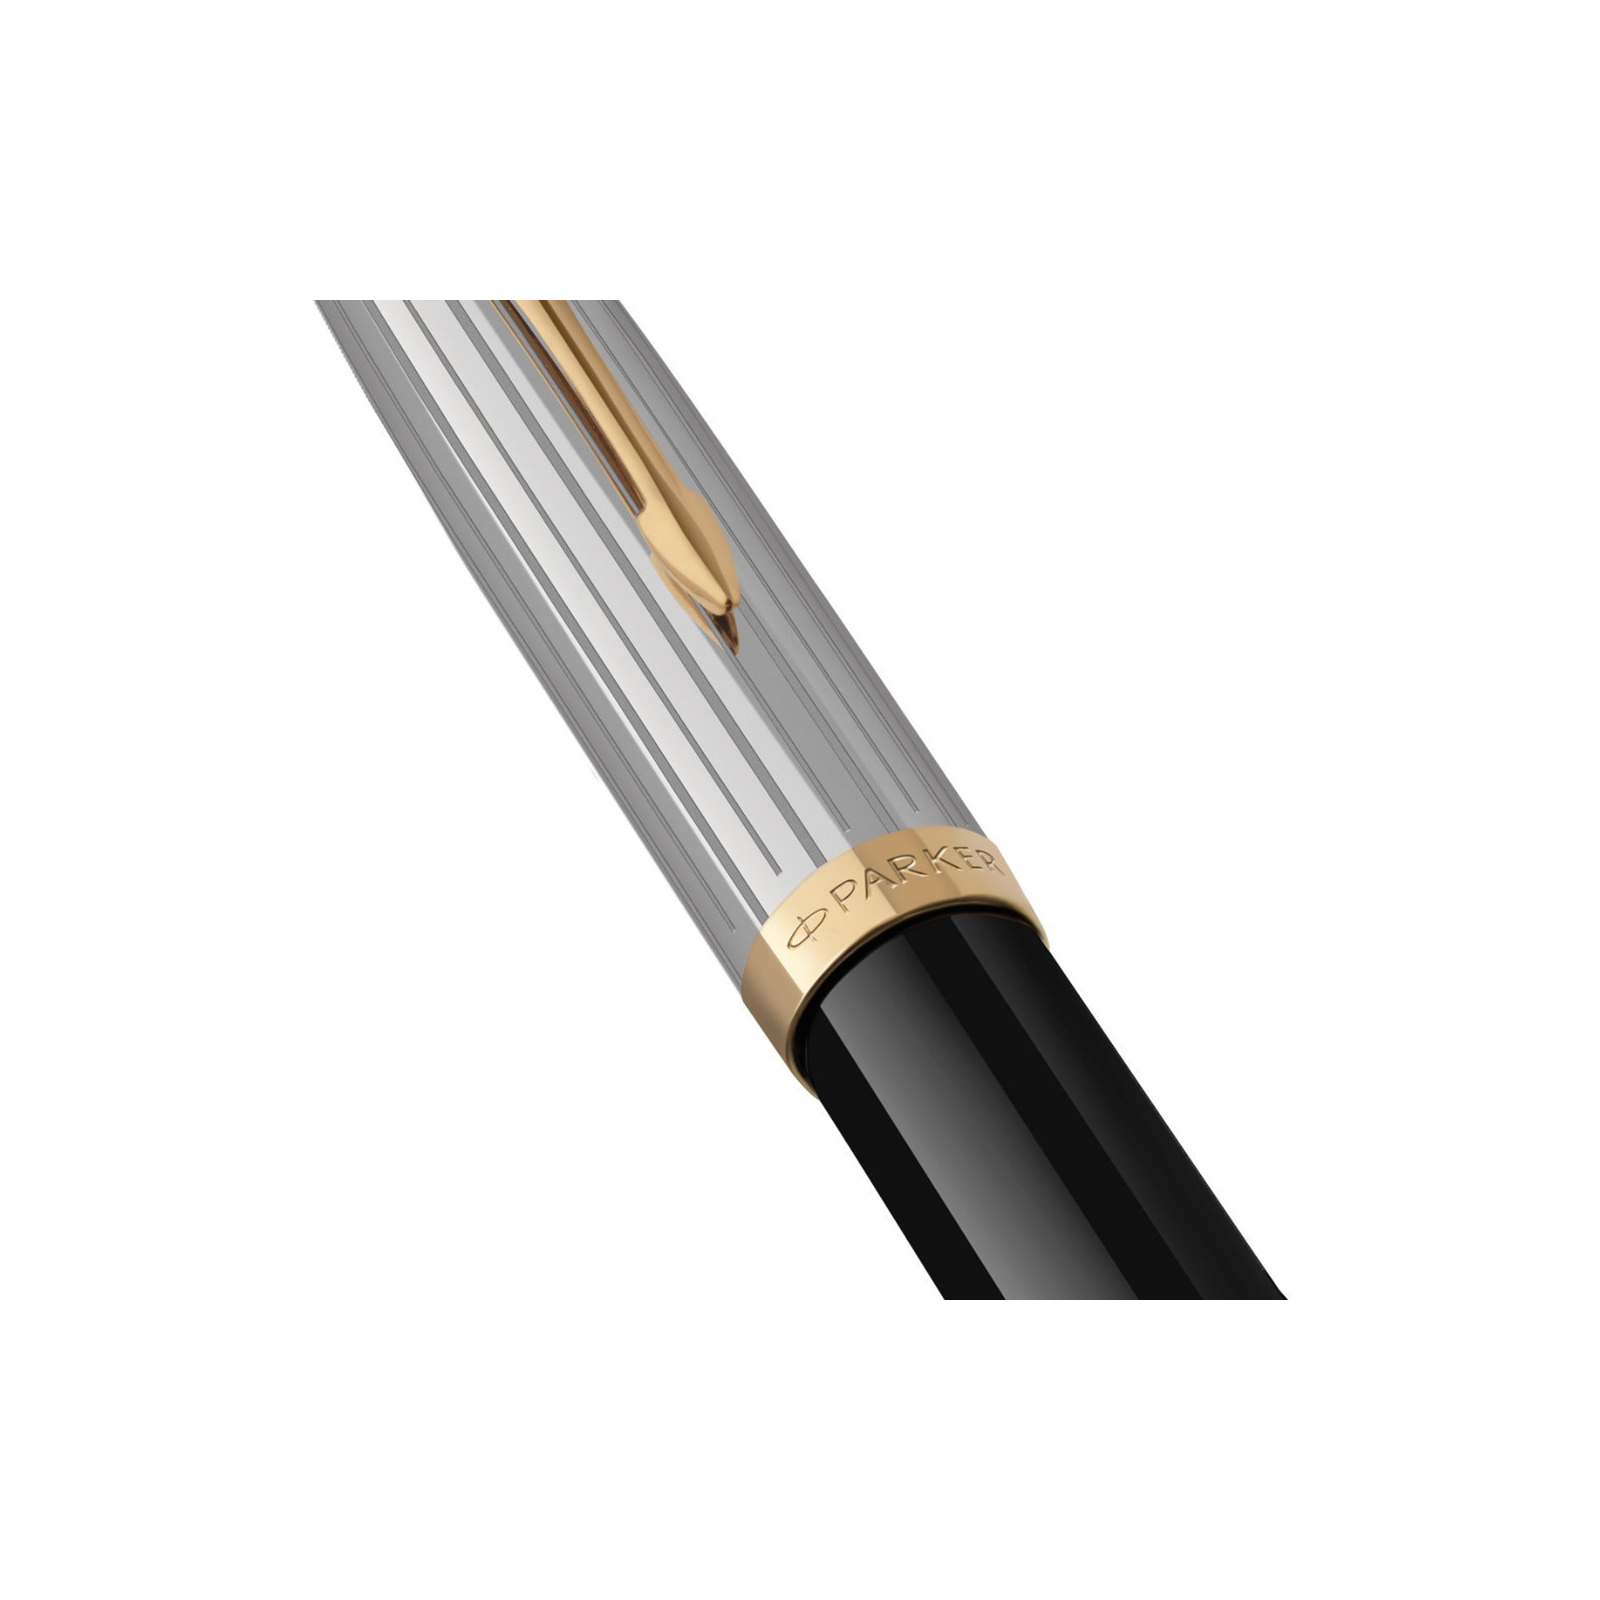 Ручка шариковая Parker 51 Premium Black GT BP (56 132) изображение 4